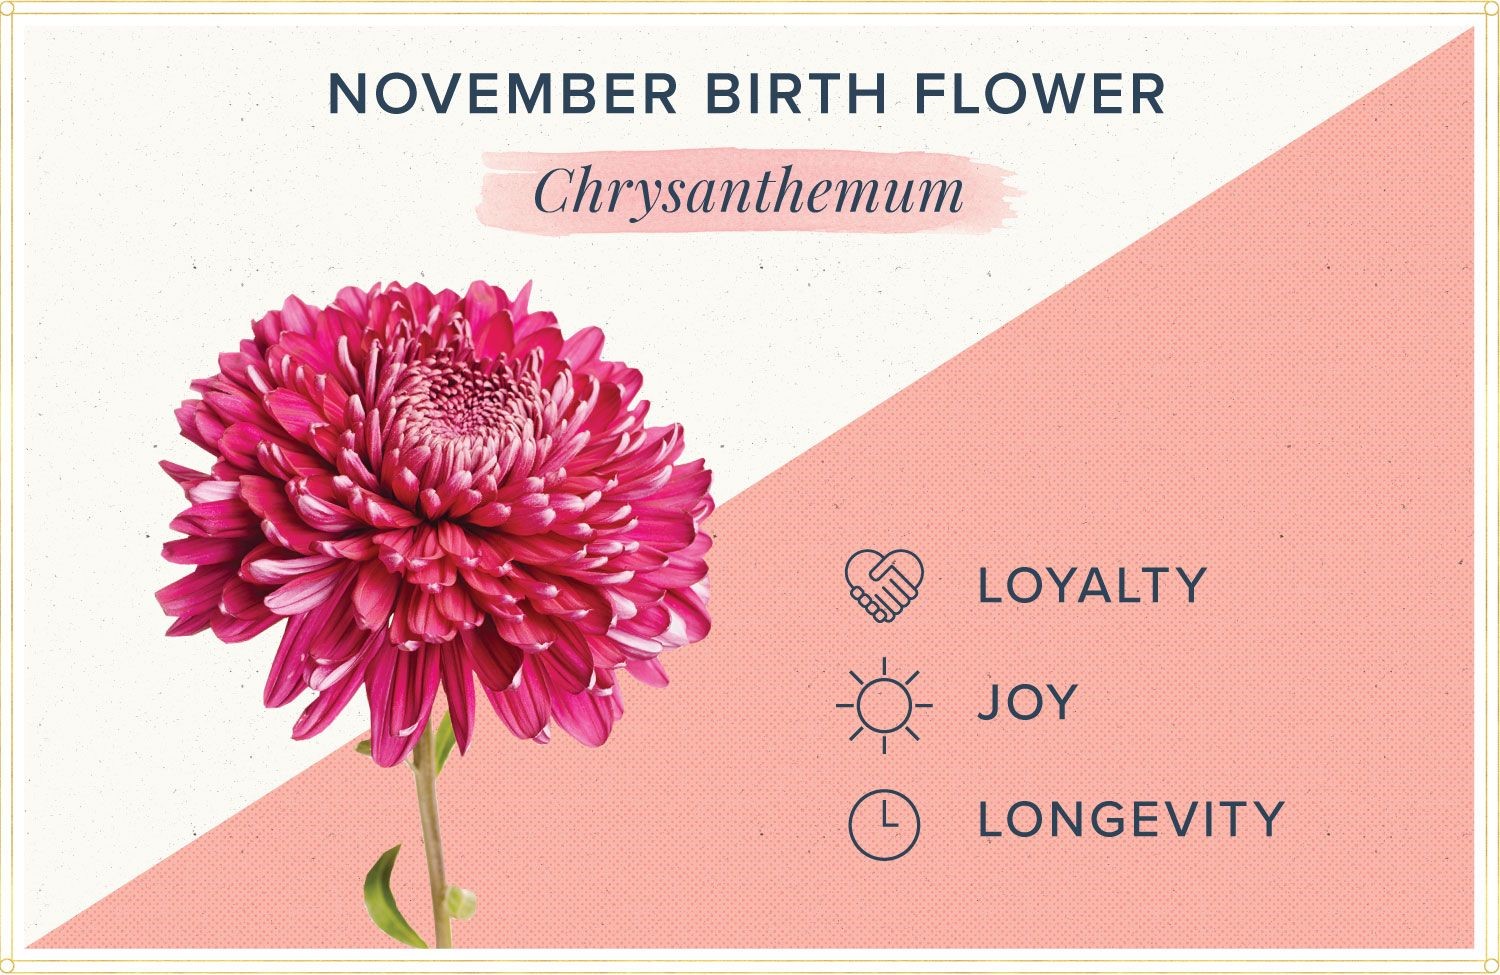 Hoa cúc là loại hoa đại diện cho người sinh tháng 11